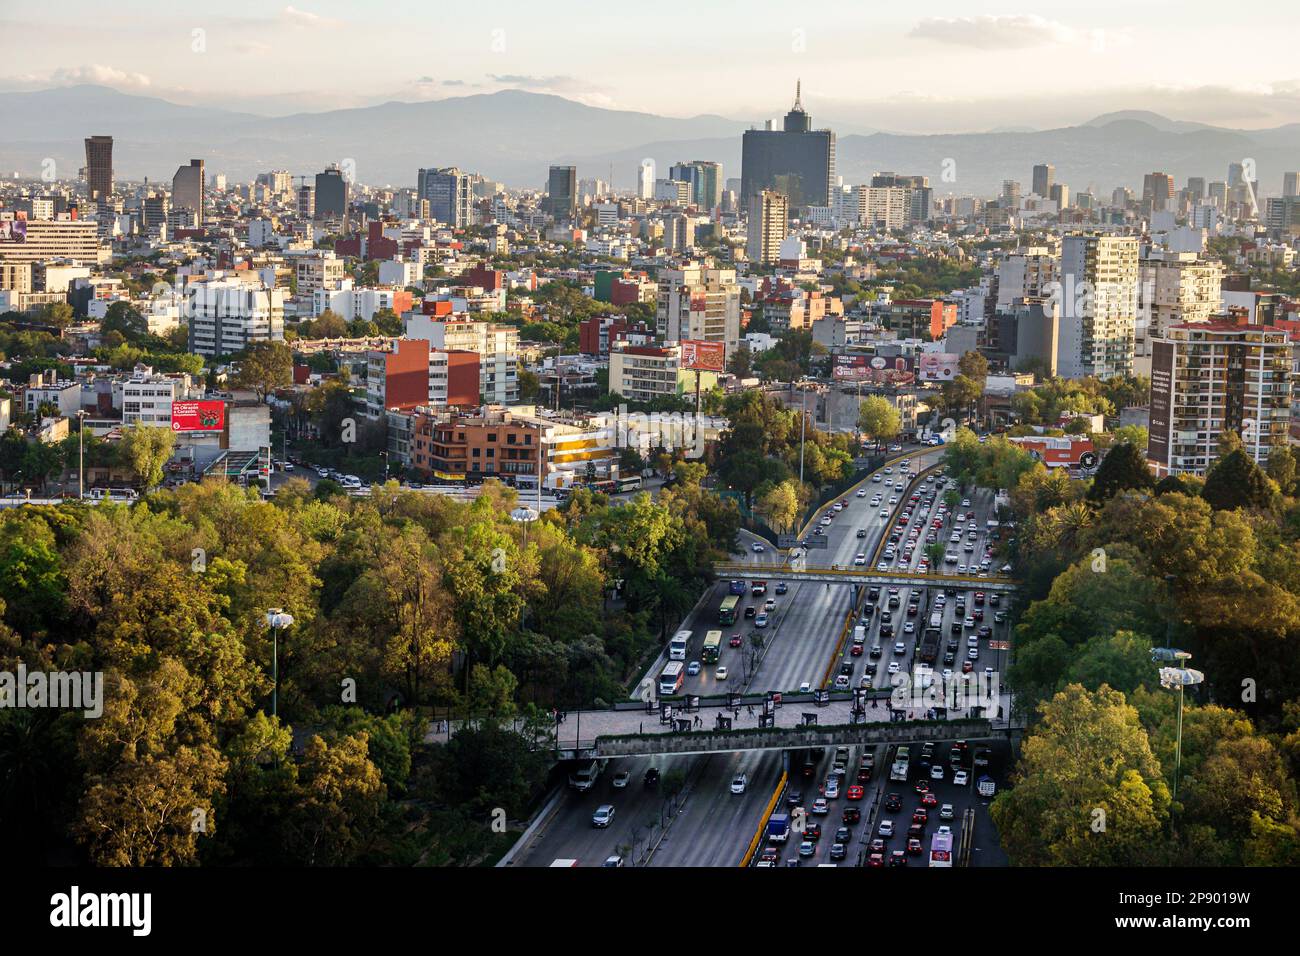 Città del Messico, vista aerea dall'alto, autostrada trafficata, circuito interno Melchor Ocampo, alto grattacielo grattacieli grattacieli alto edificio bu Foto Stock